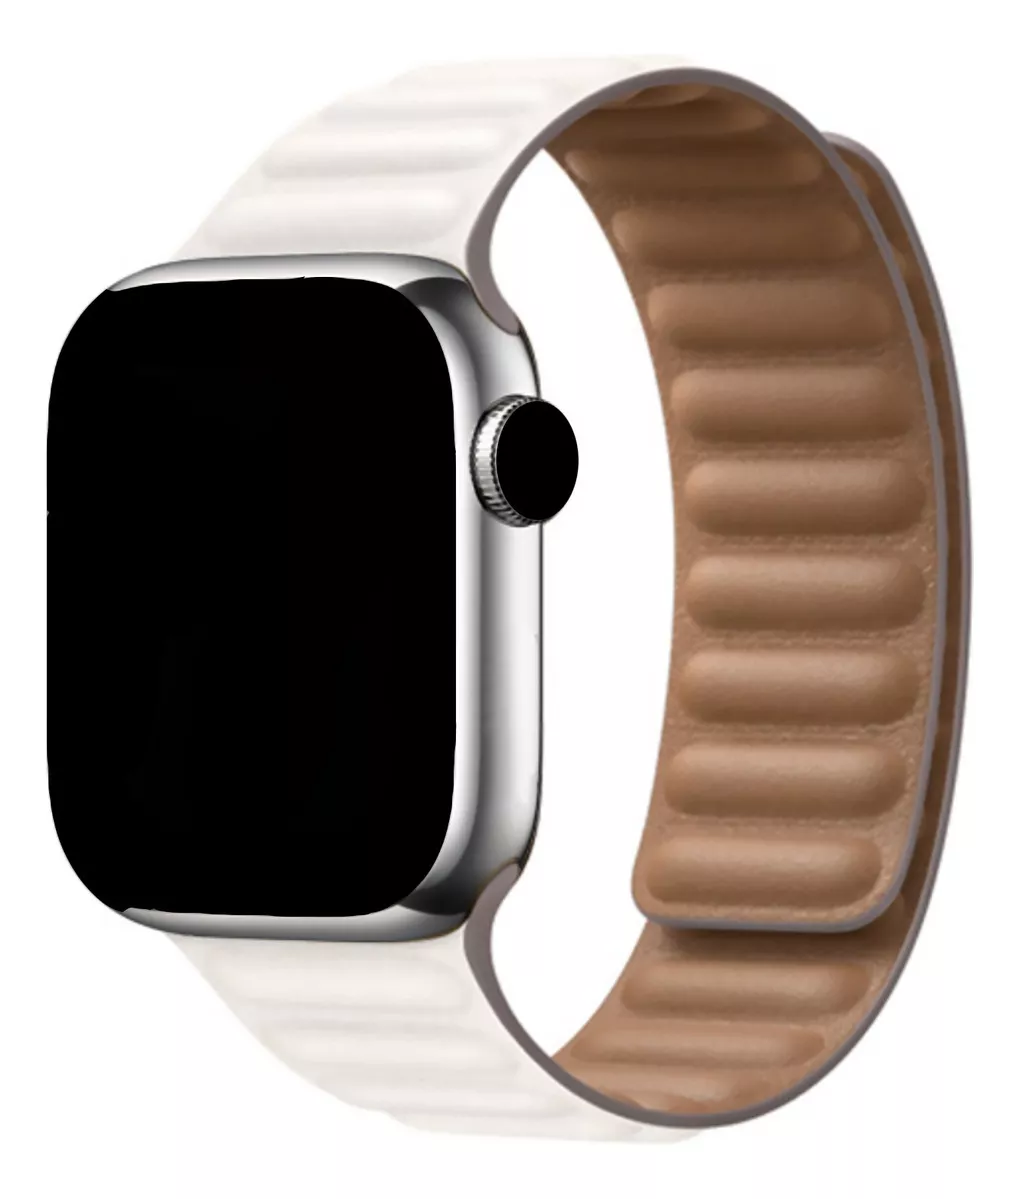 Segunda imagem para pesquisa de pulseira apple watch couro